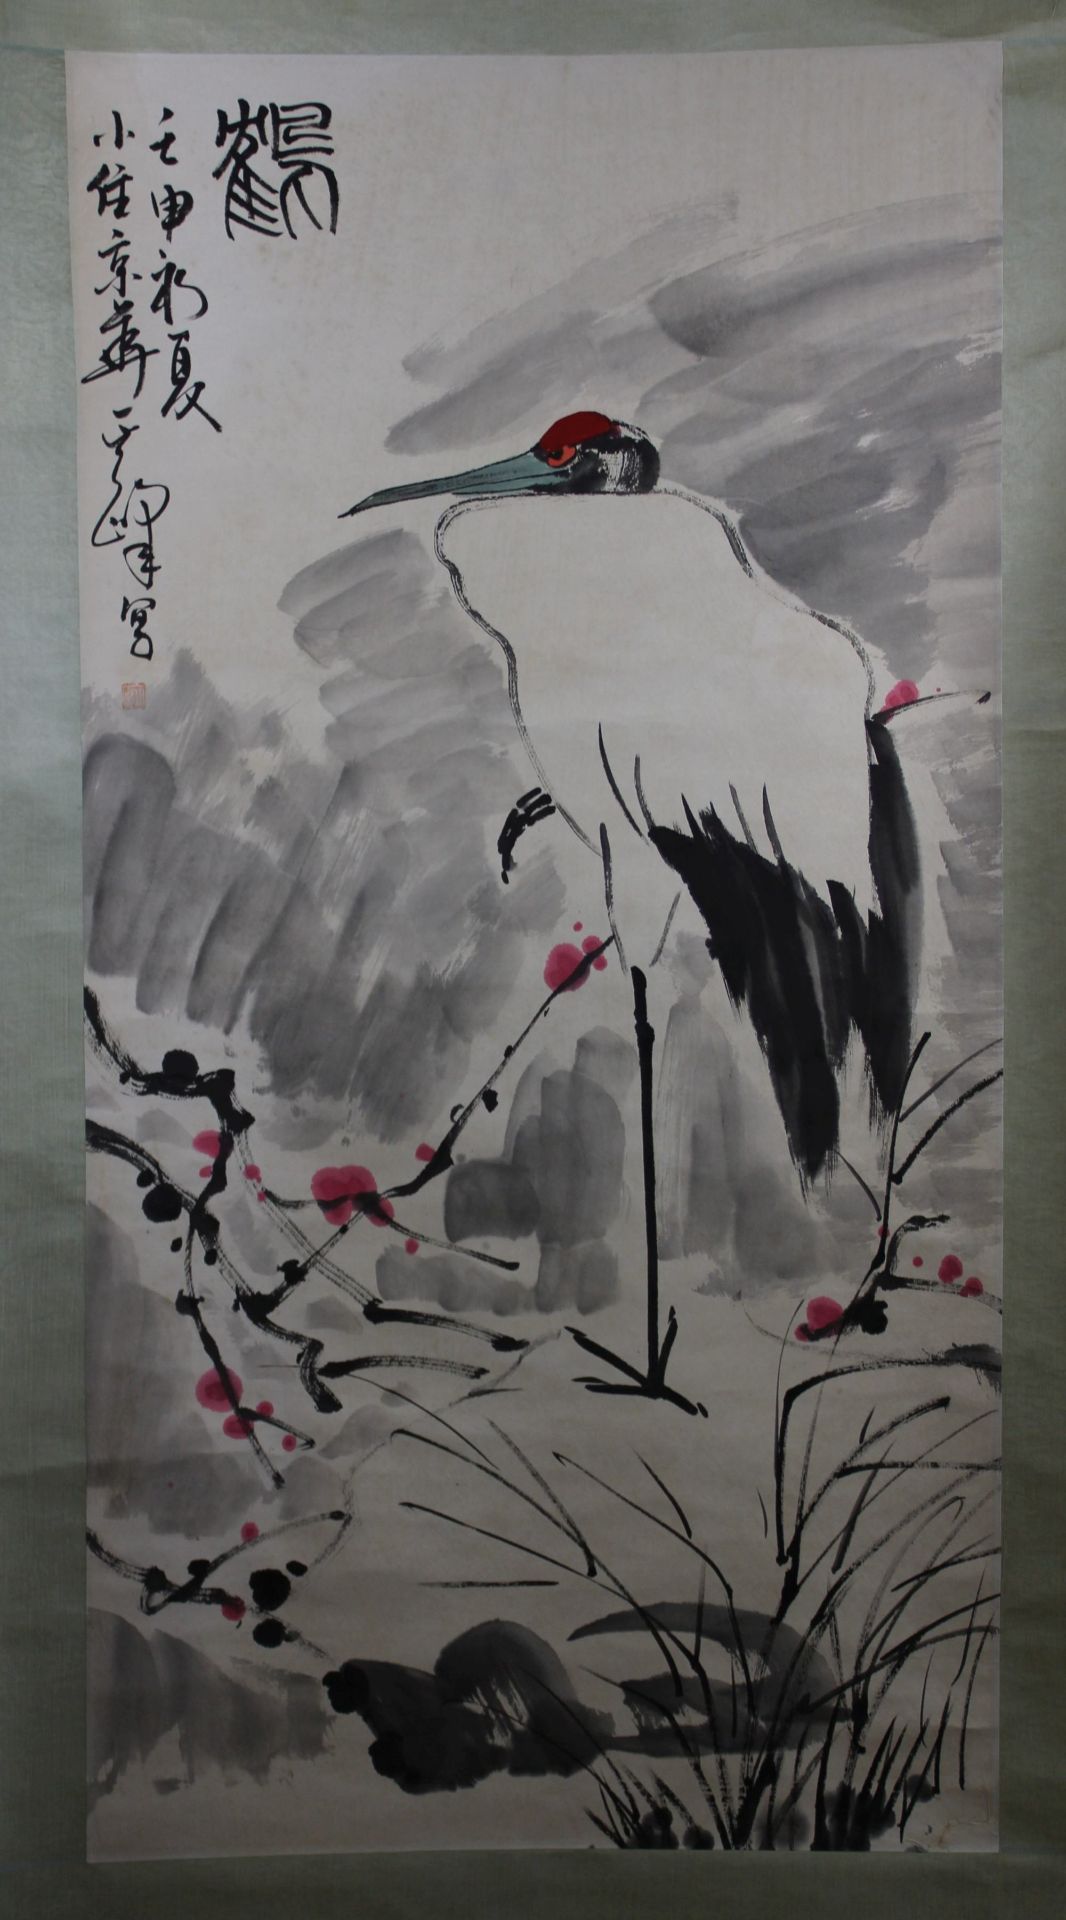 Li Kuchang (Chinesisch, 1899-1983), Rollbild, Reiher, Papier und Tusche, Maße 171 x 59 cm. Gestempe - Bild 2 aus 3